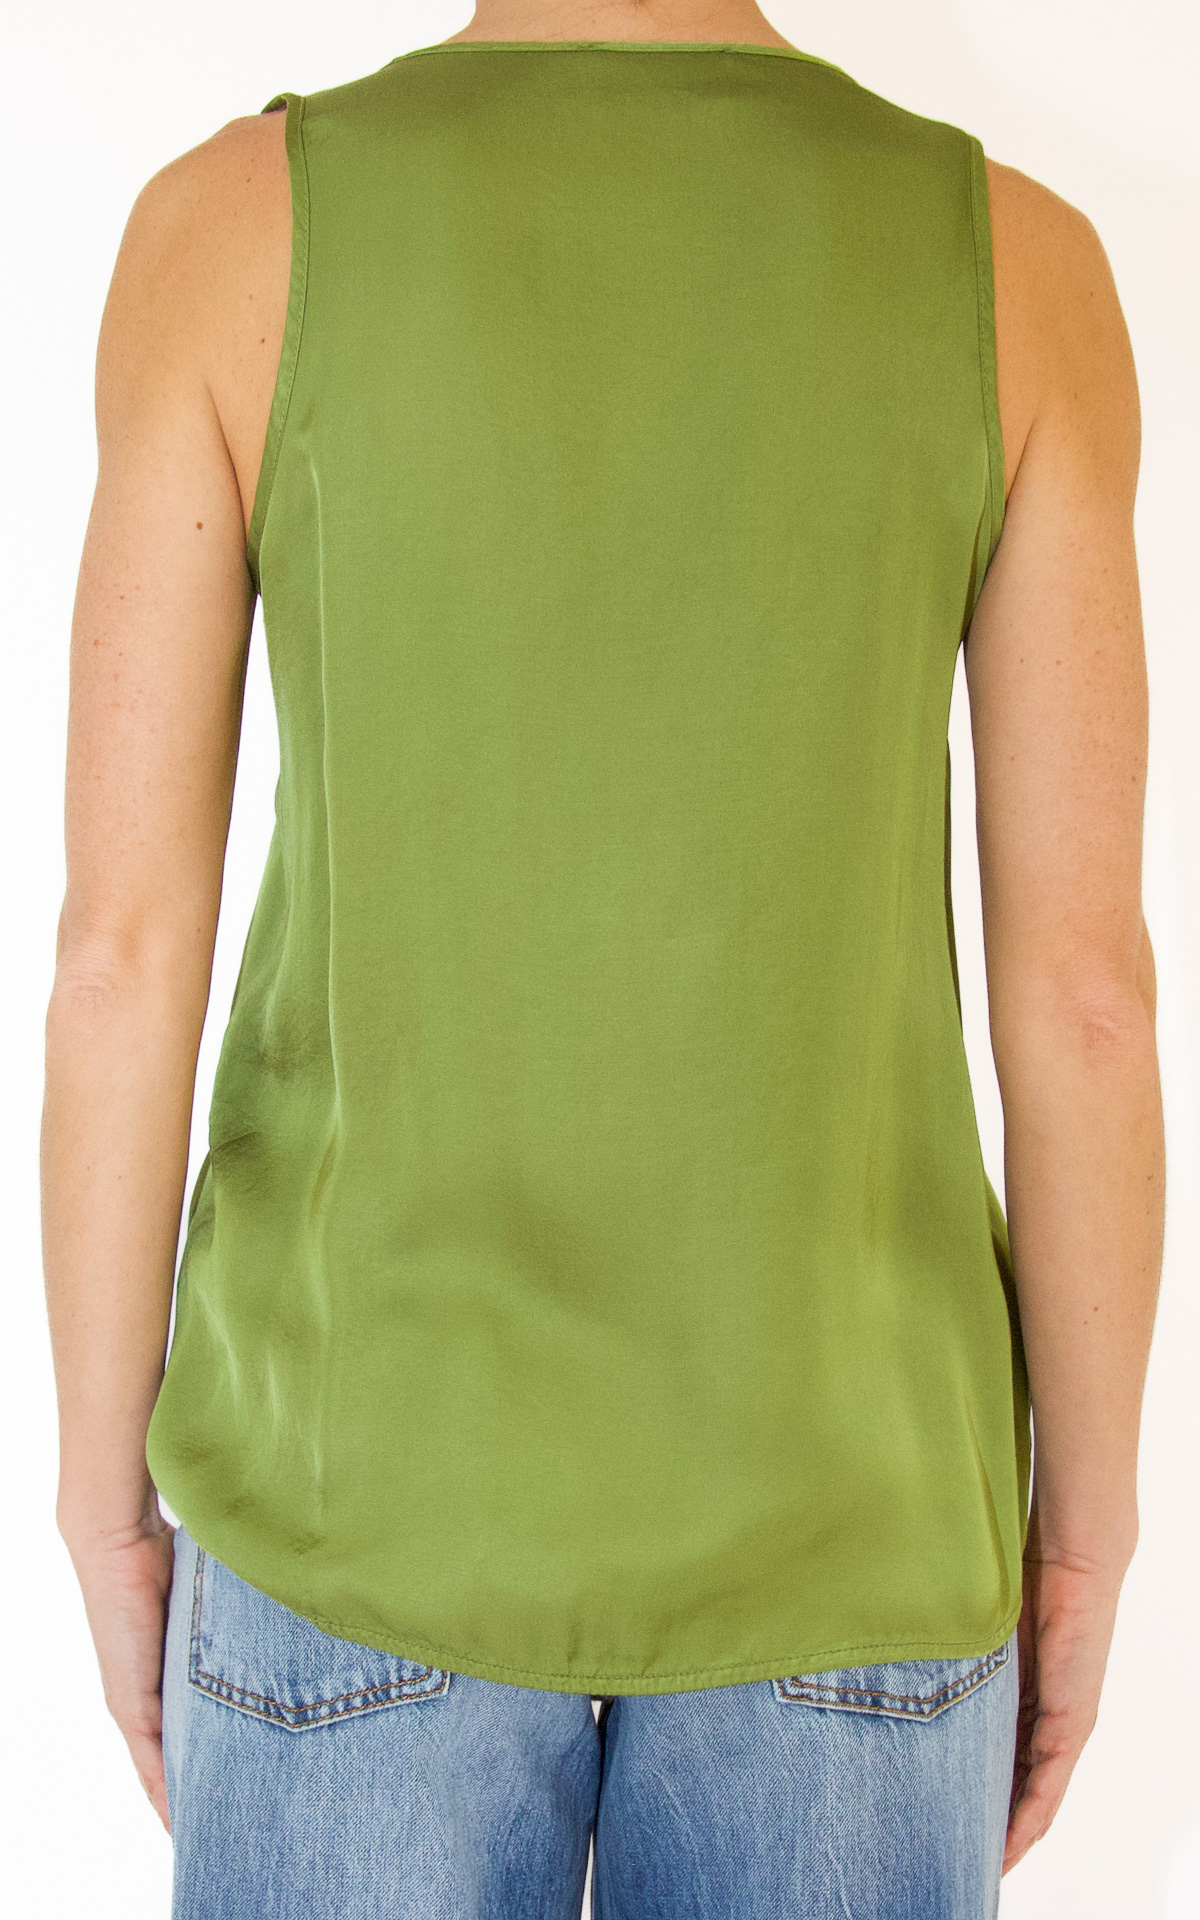 (image for) Pietronilla – blusa rouches smanicata – verde militare